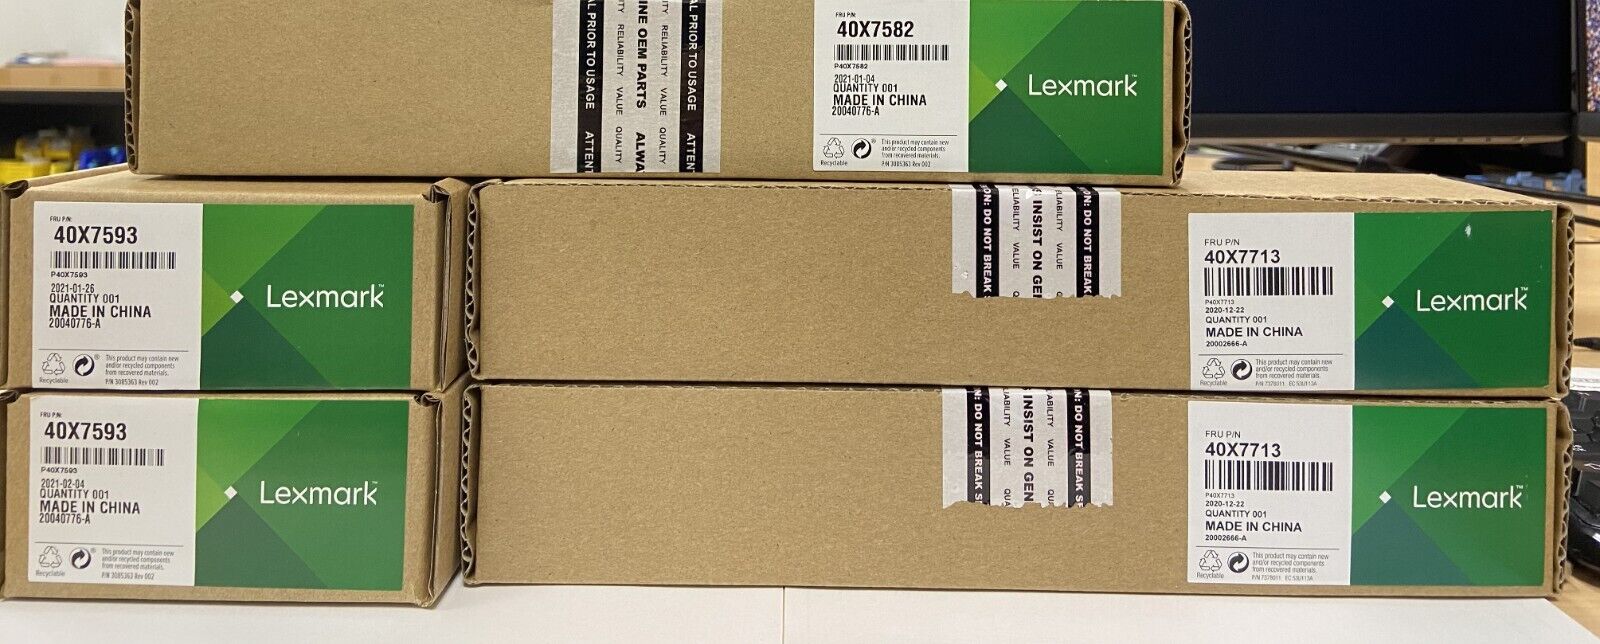 Lexmark Genuine Maintenance Kit Fits A Wide Range of Models